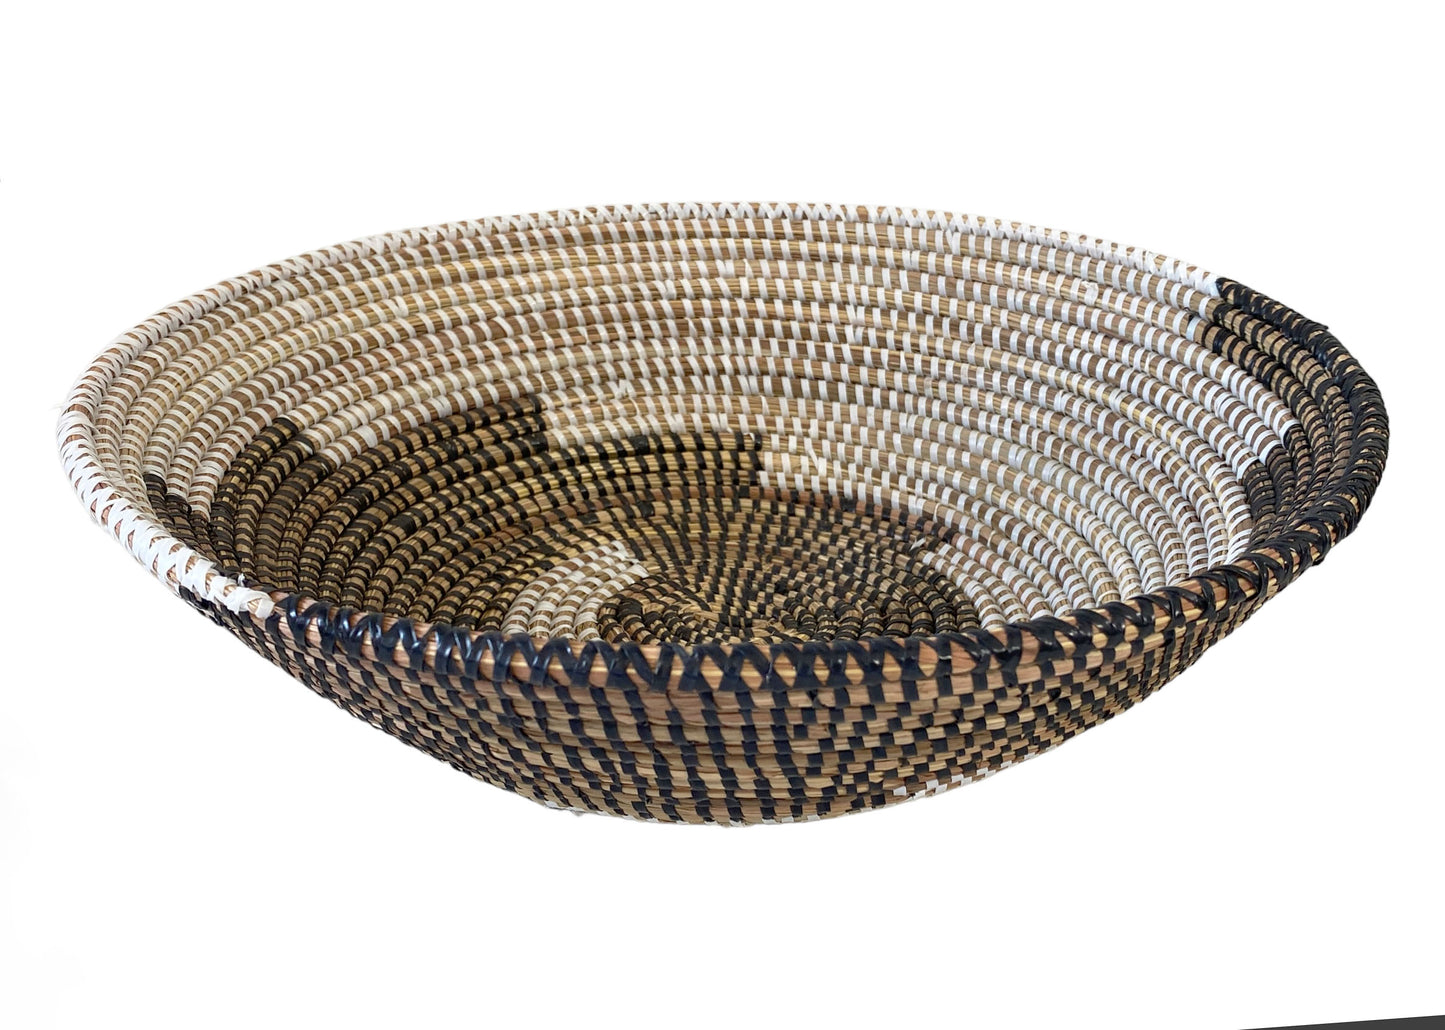 #5601 Handmade Woven Wolof Basket From Senegal 12.25" D